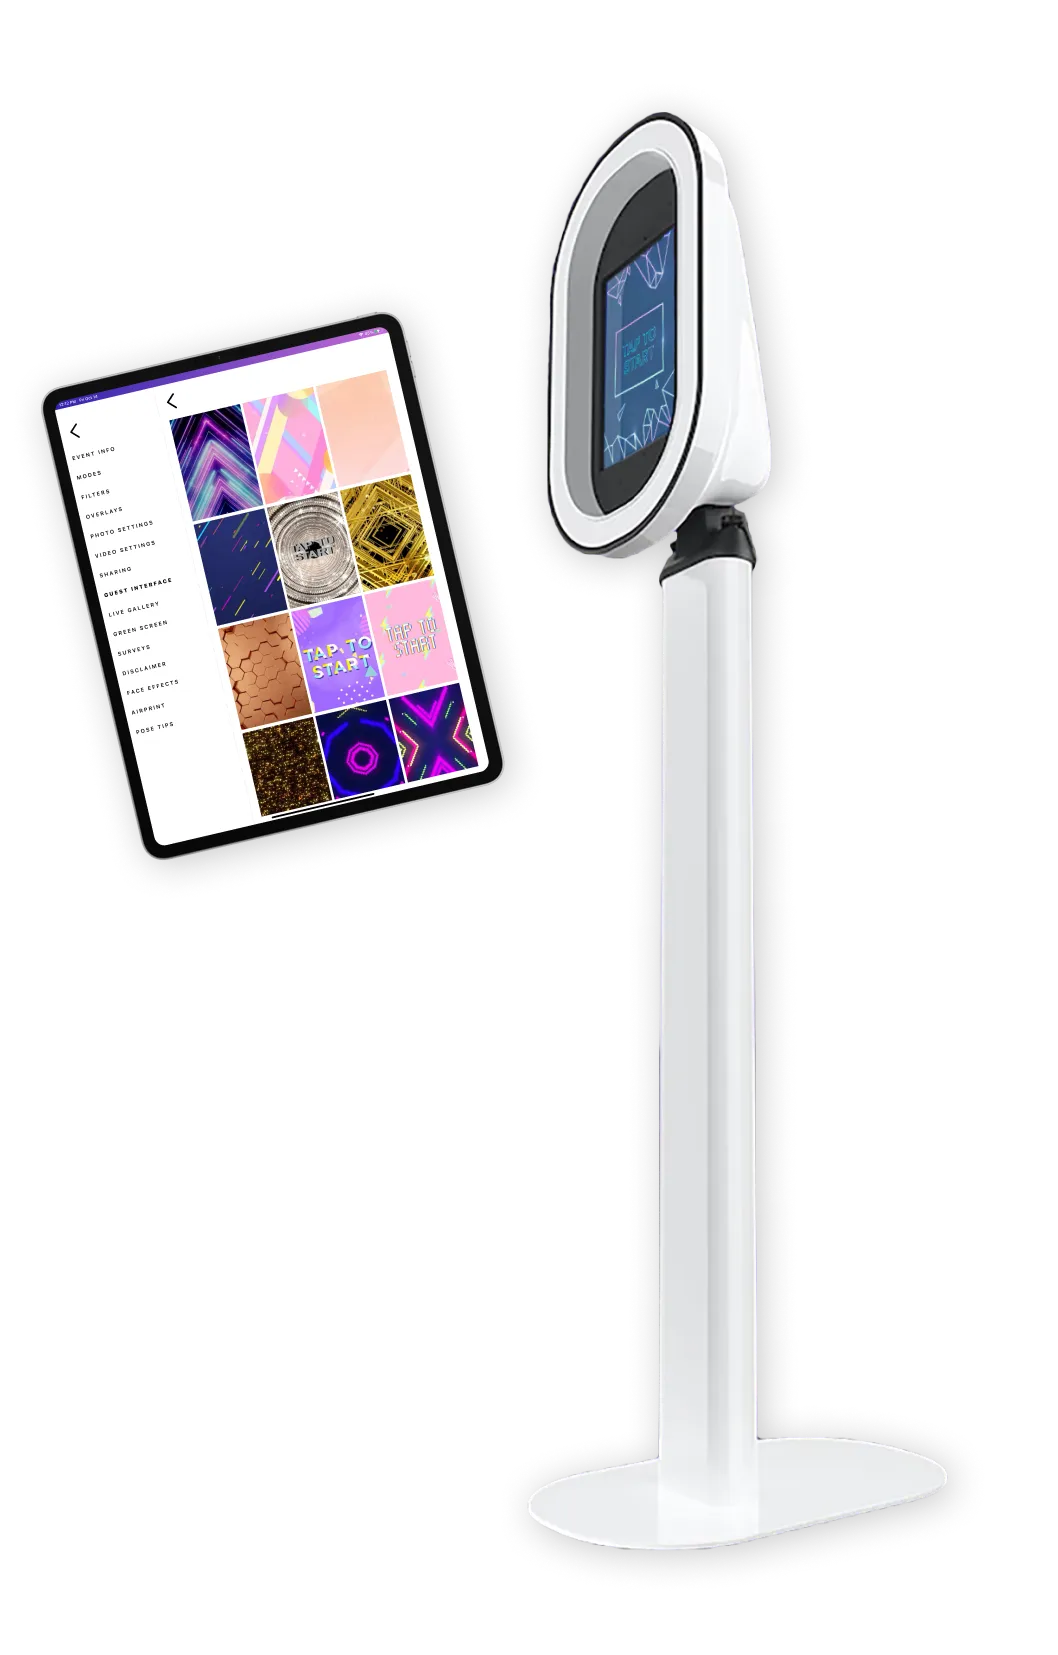 Salsa booth and iPad mockups with Sala app 